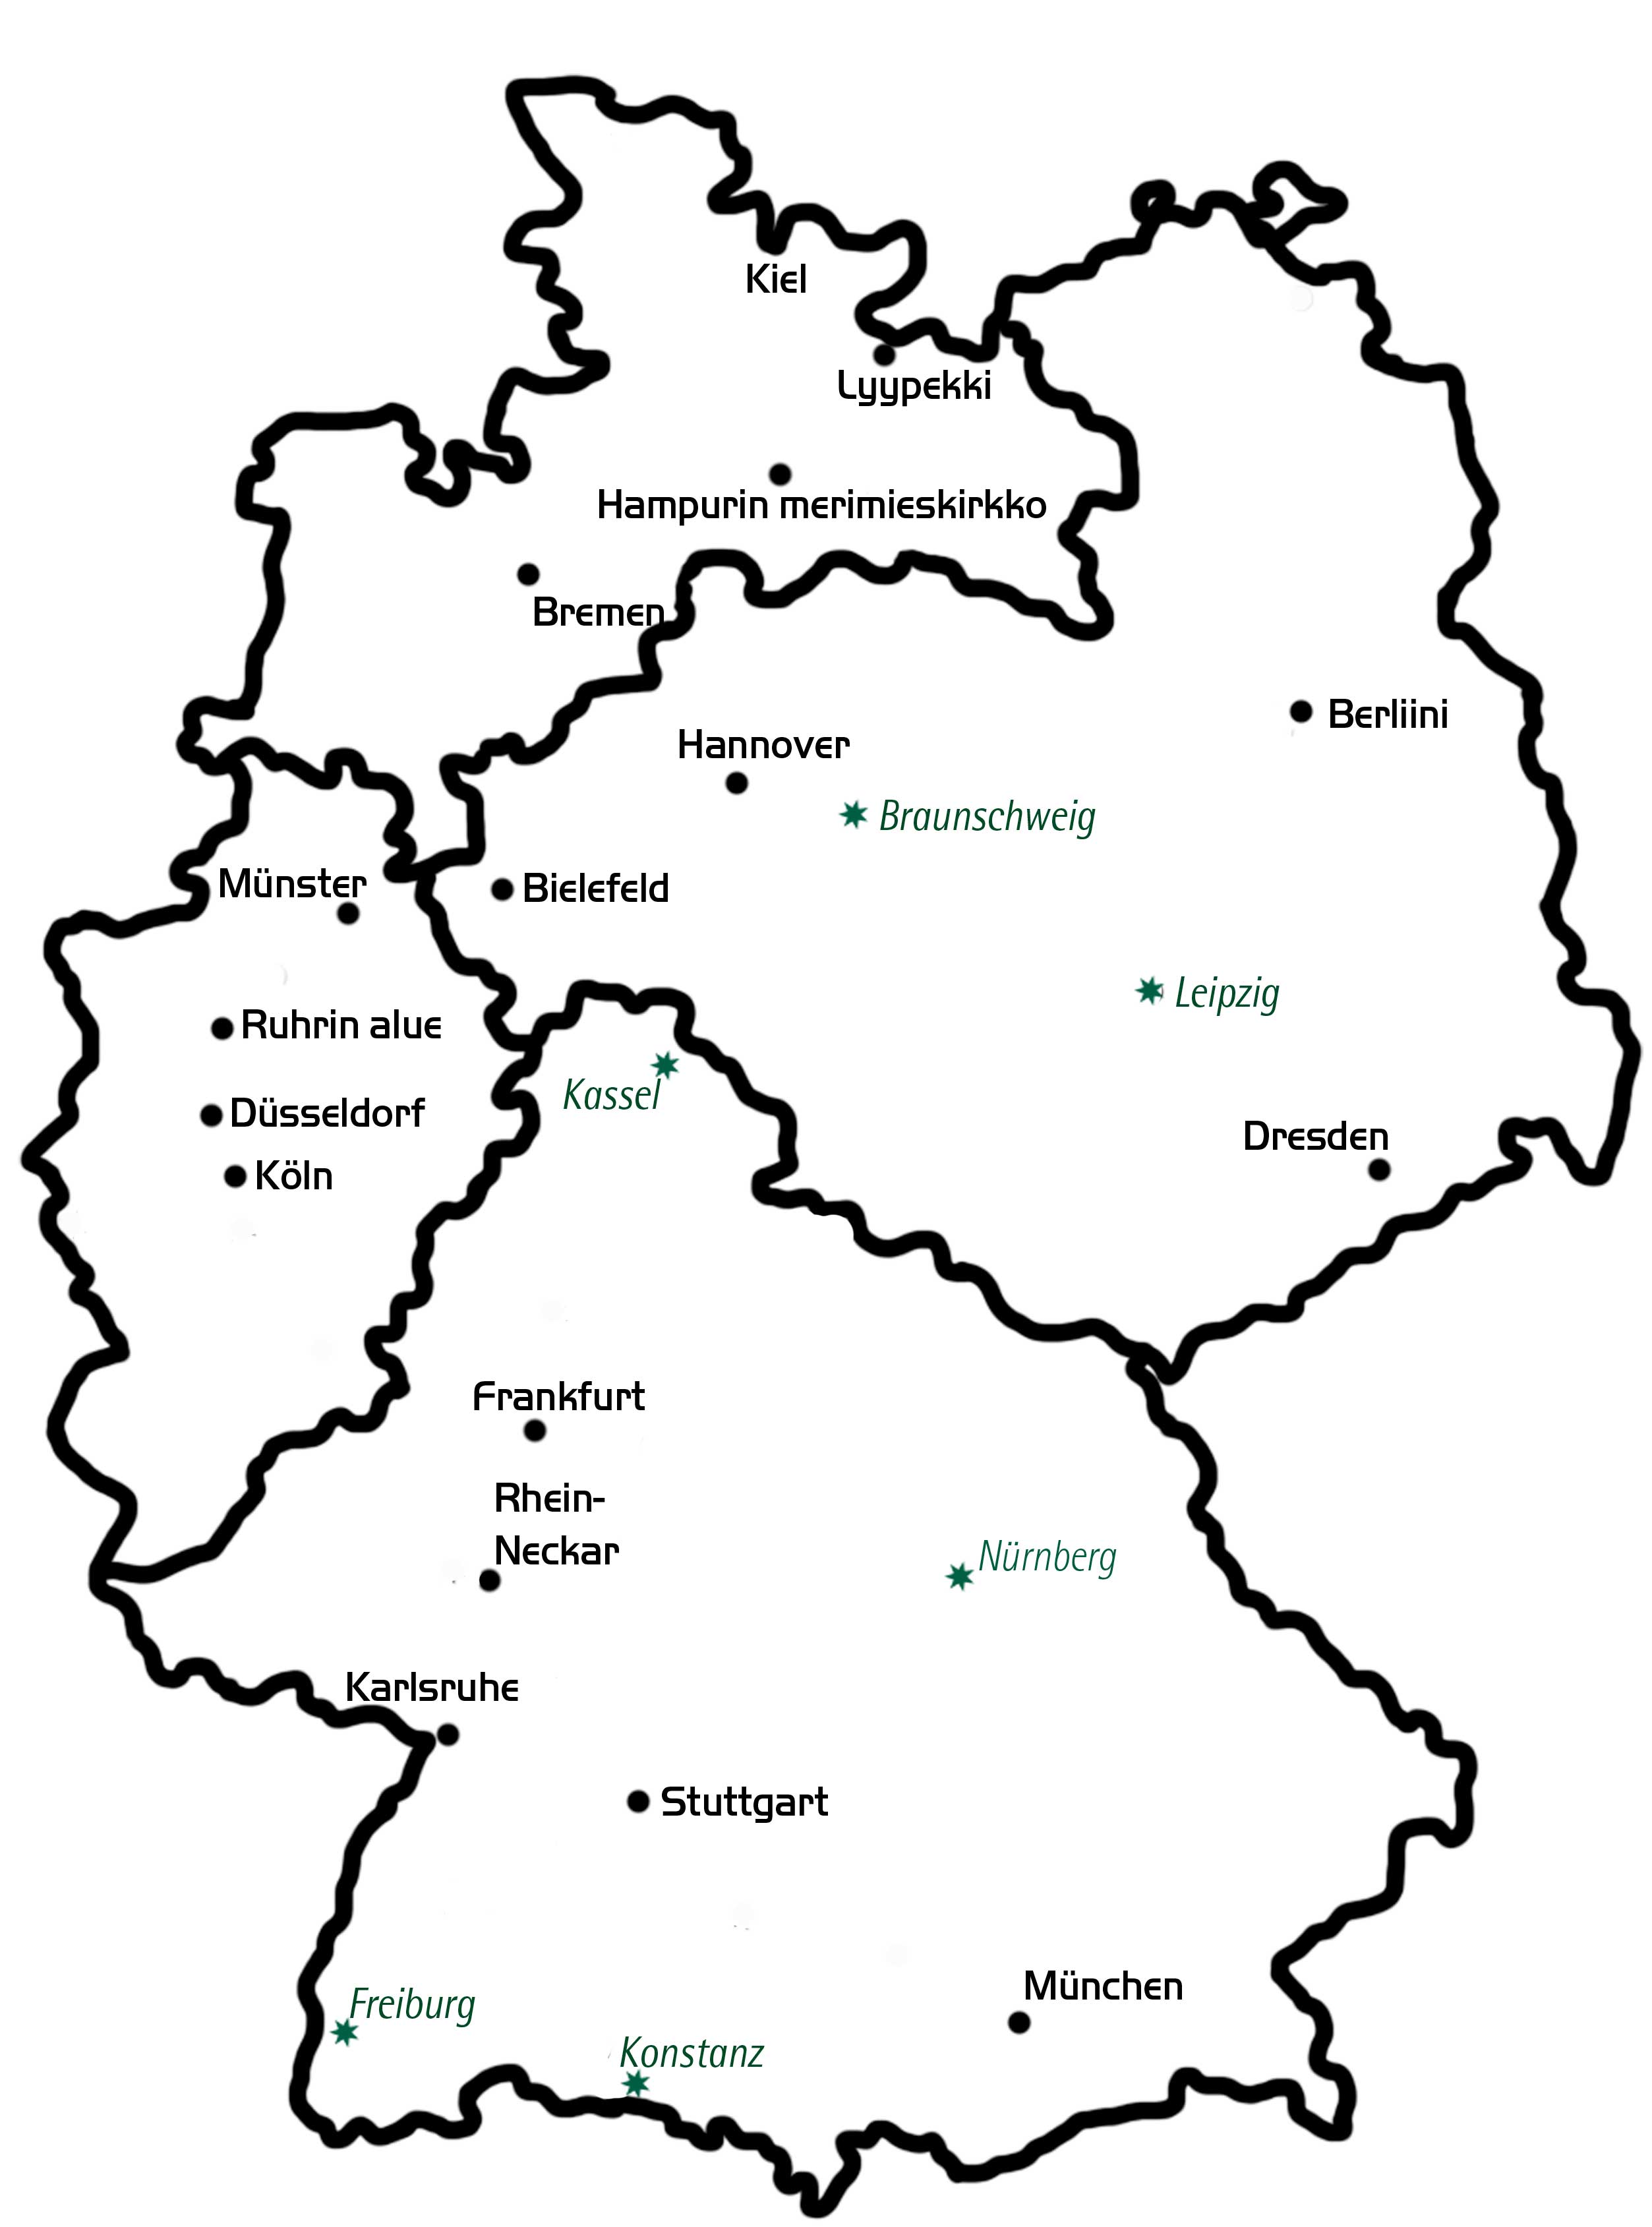 Saksan kartta, johon merkitty suomalaiset seurakunnat ja jumalanpalveluspaikat